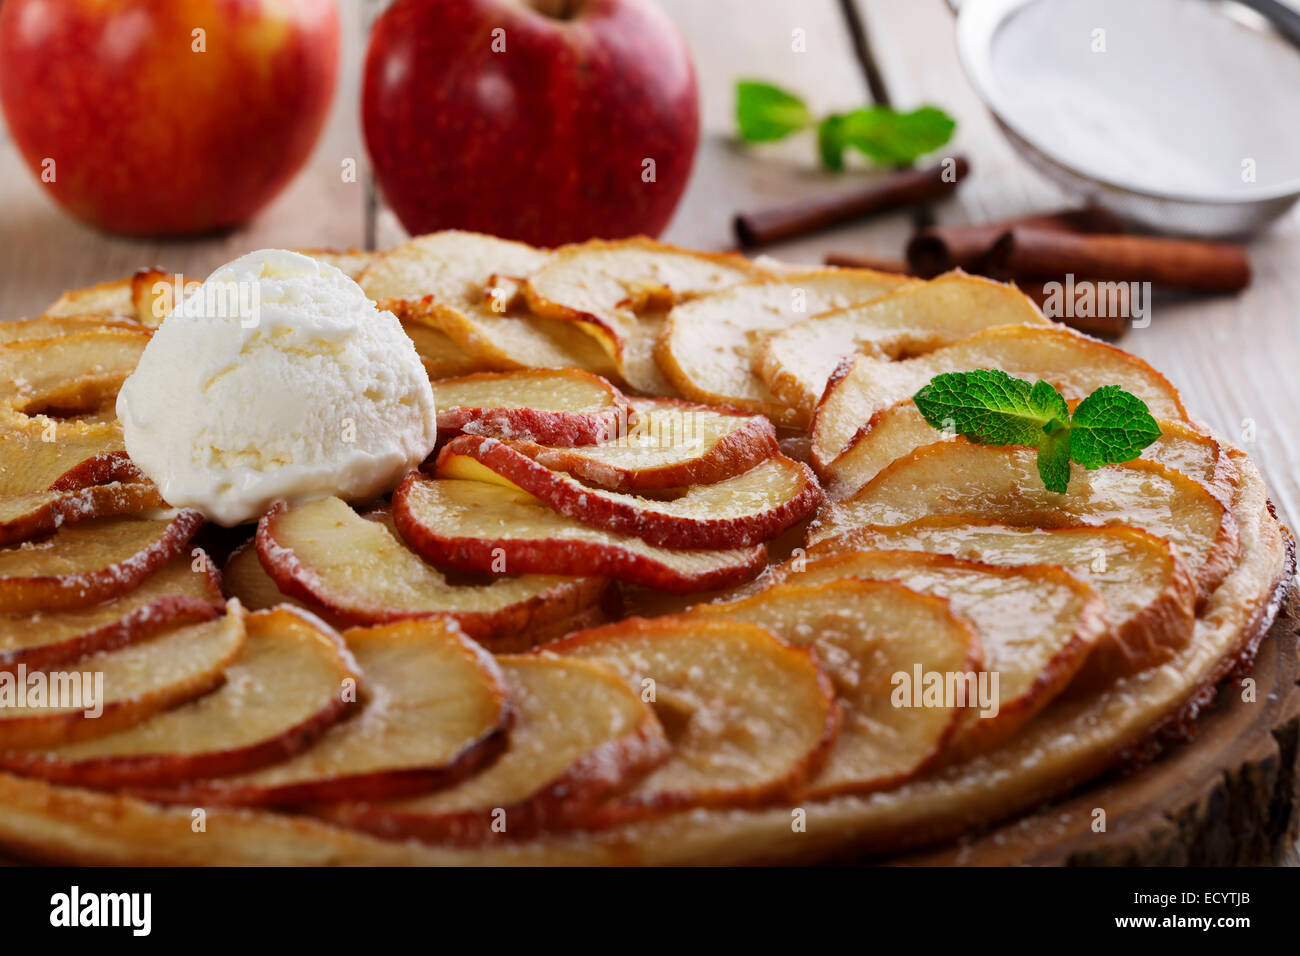 Open apple pie puff pastry with ice cream Stock Photo